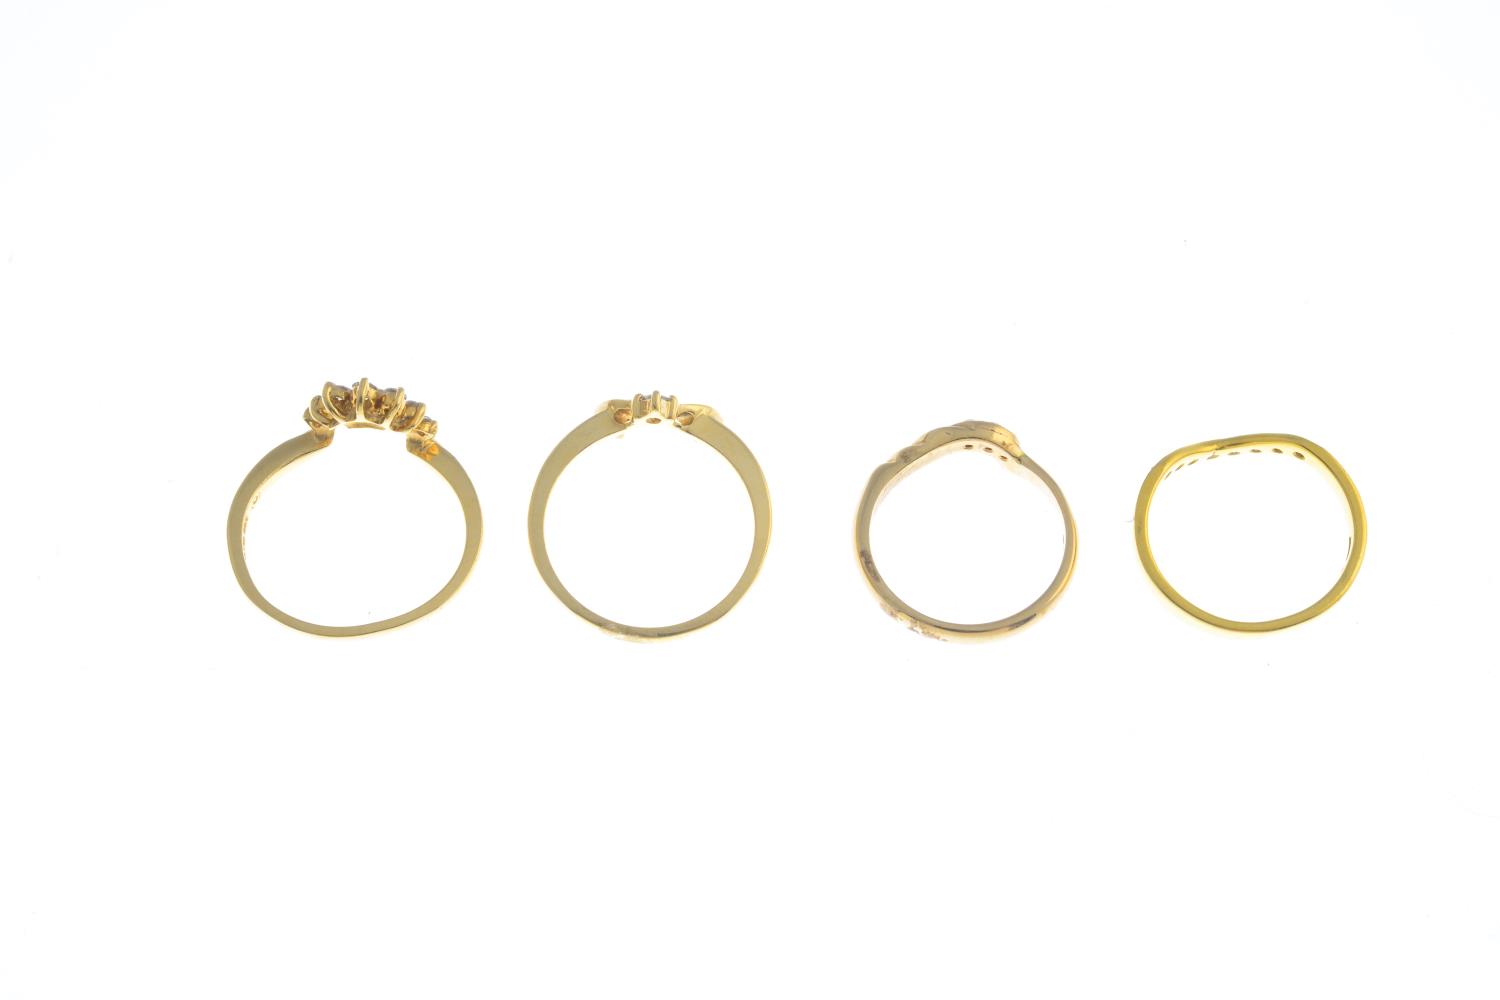 Four diamond rings. - Image 2 of 3